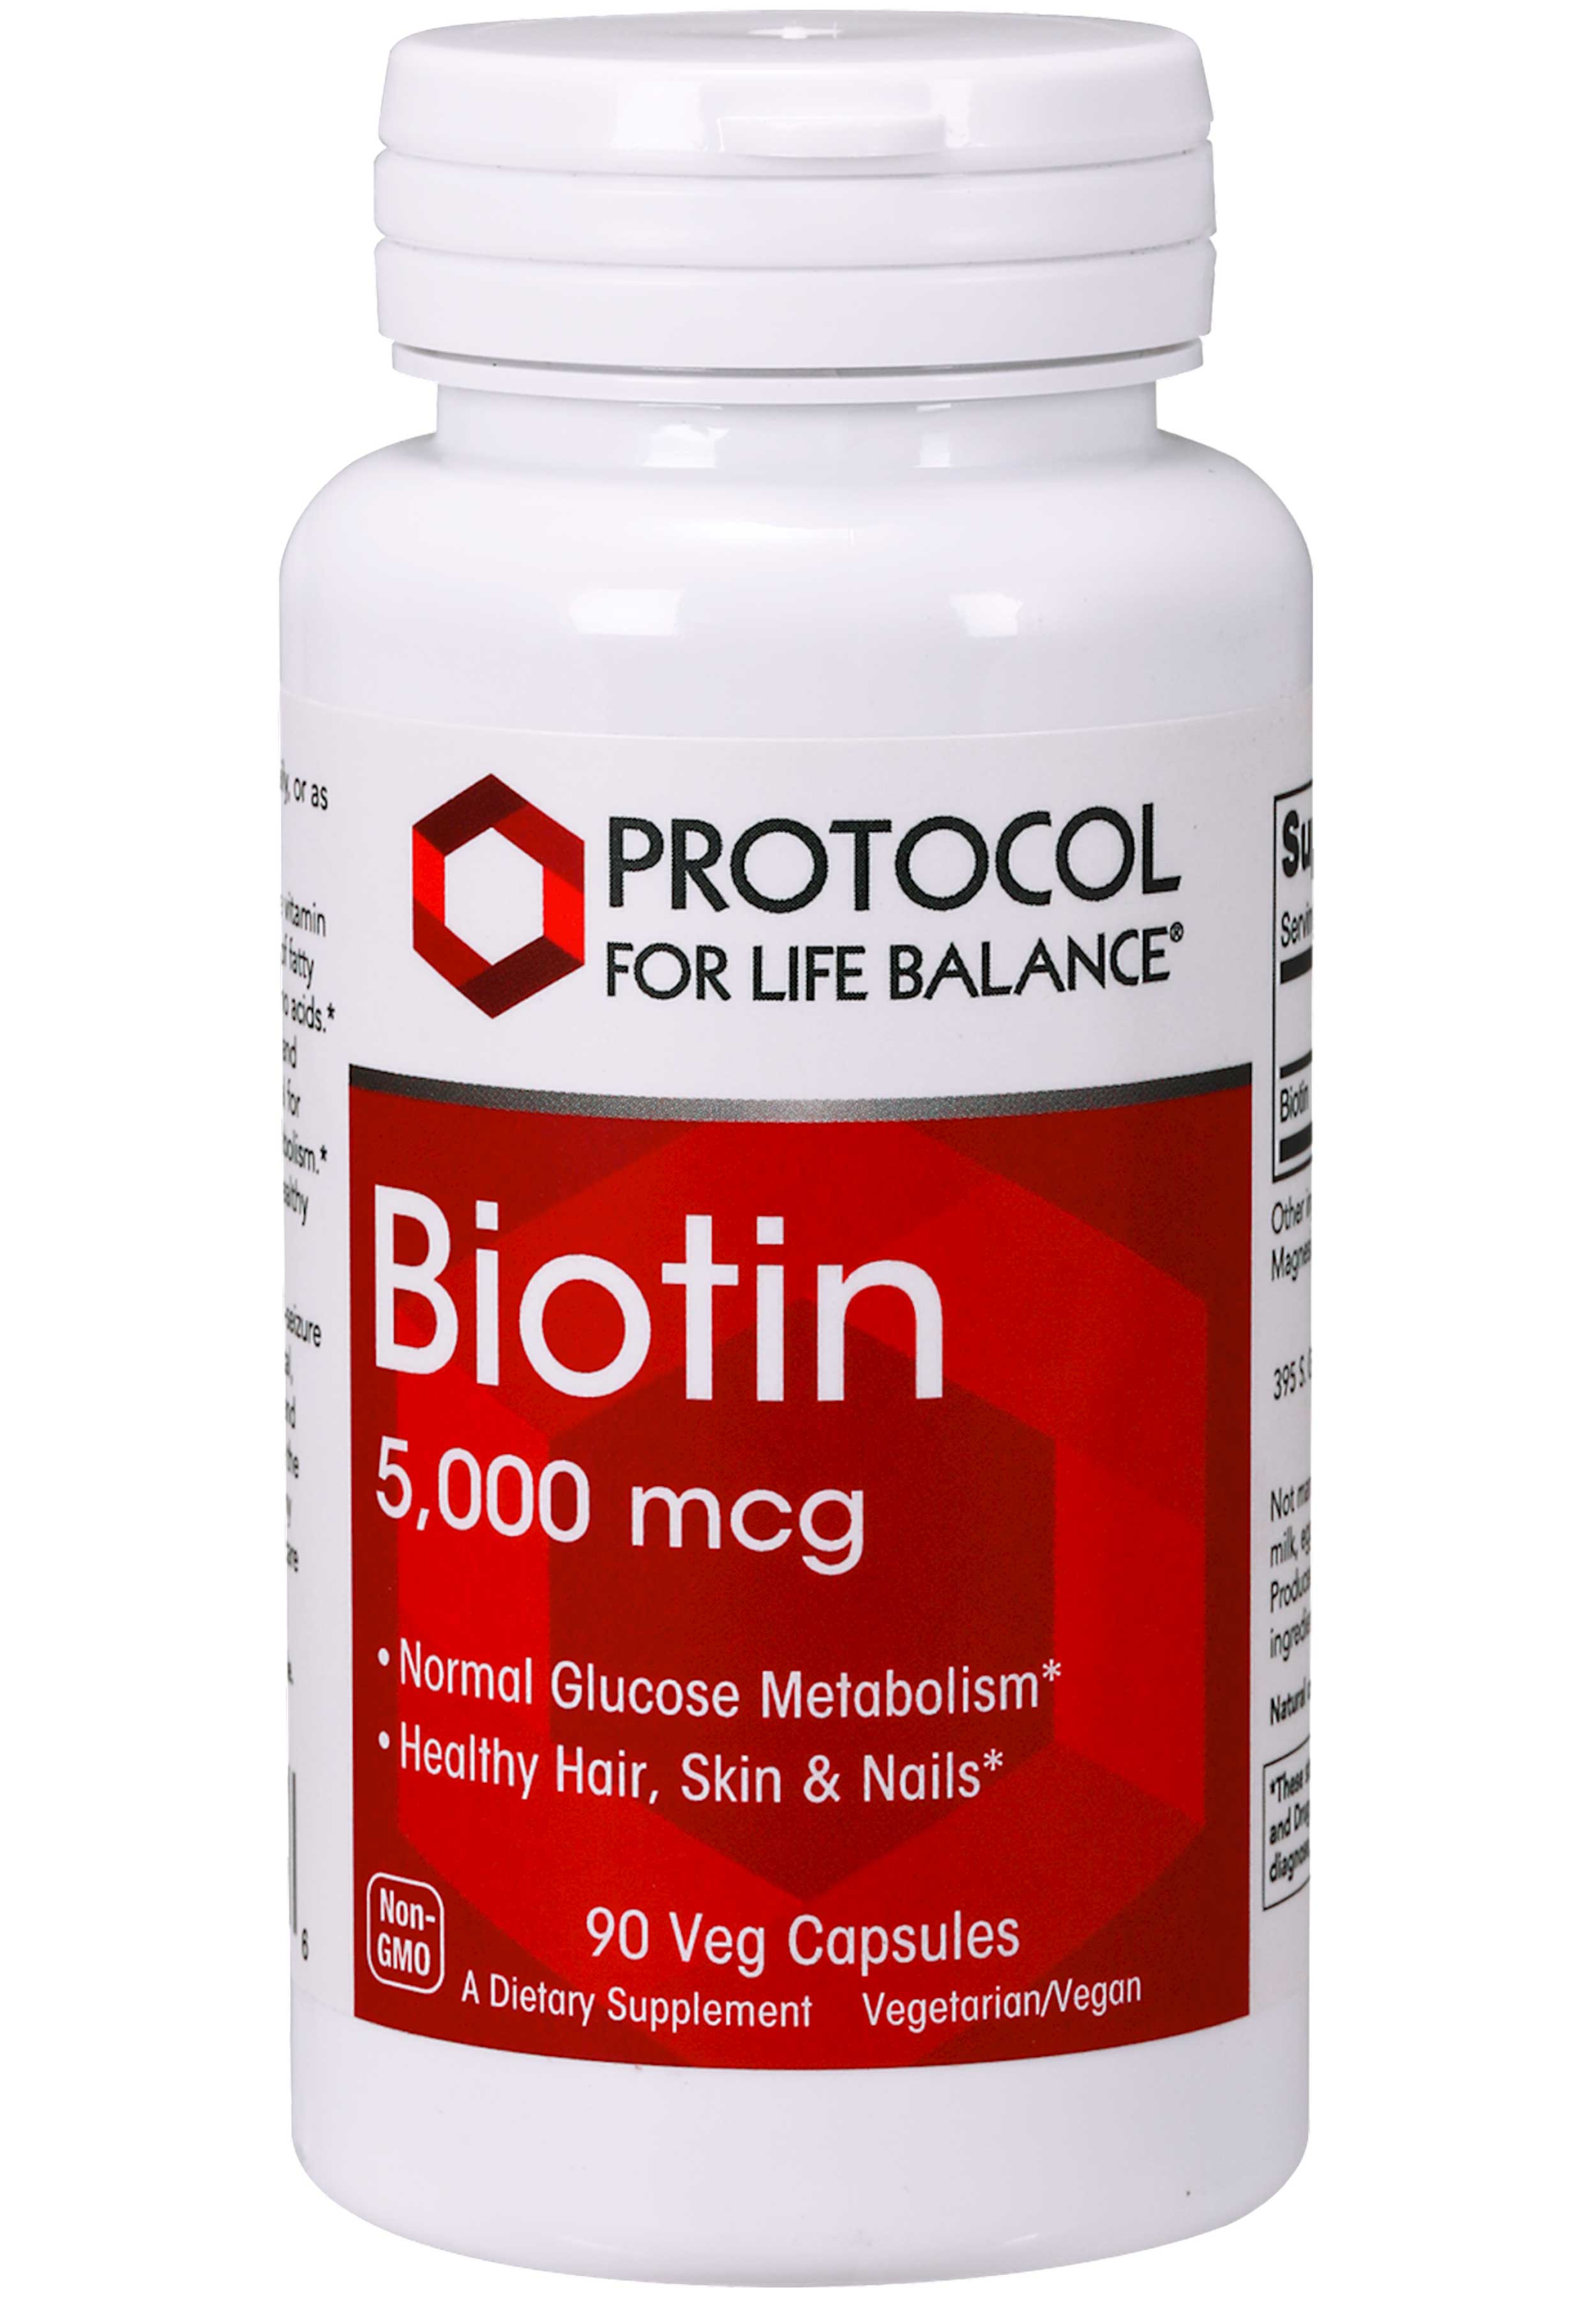 Protocol for Life Balance Biotin 5,000 mcg